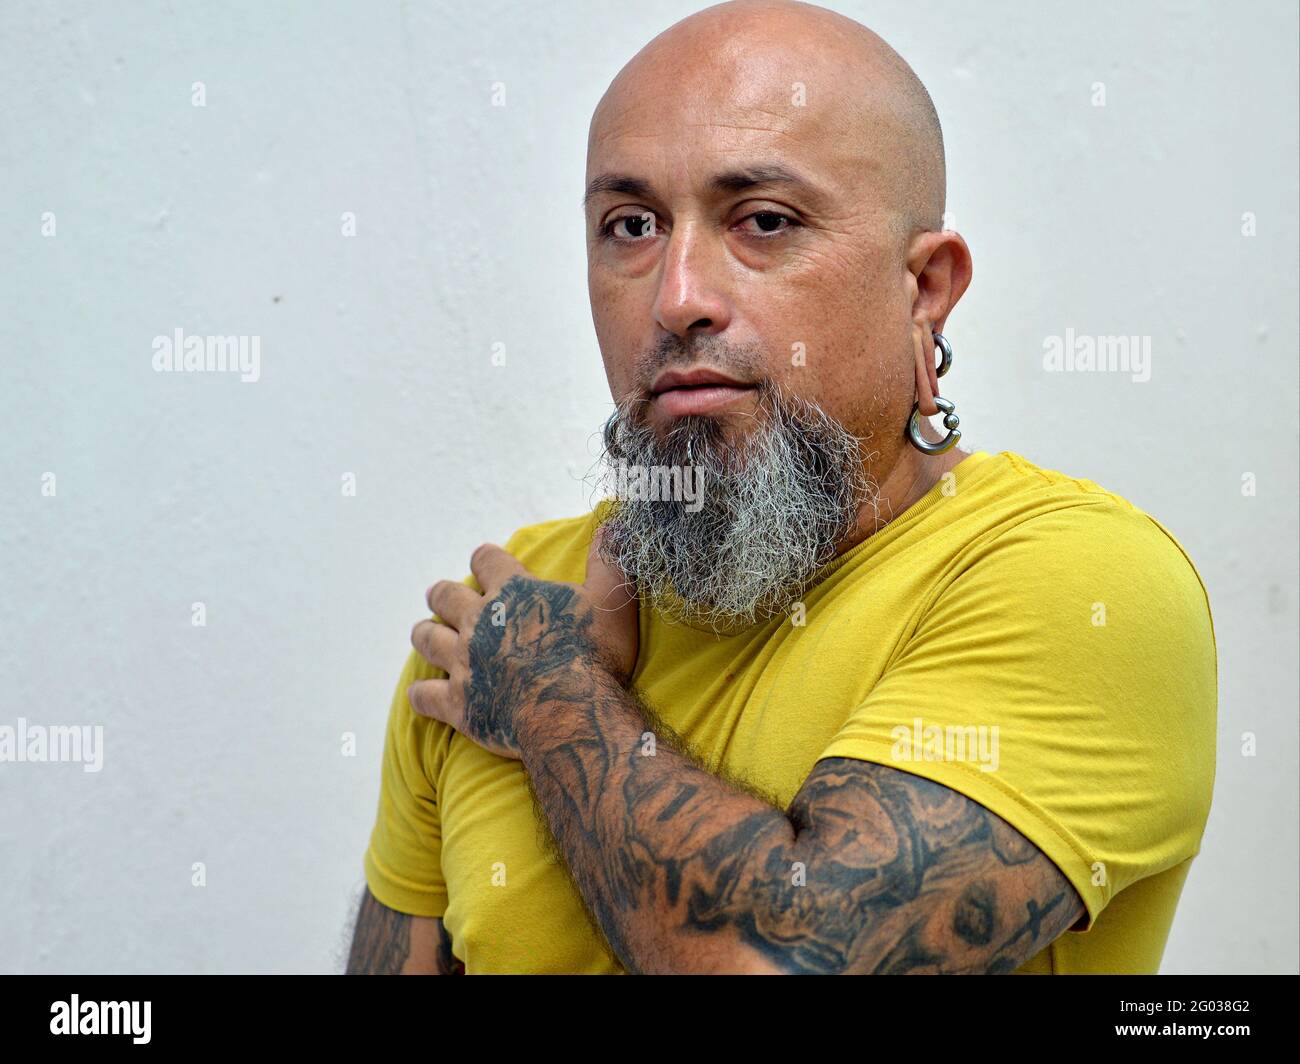 Entschlossener kaukasischer Mann mit rasierten Kopf, grauem Bart, aufwändiger Armtätowierung und Ohrläppchen-Piercings trägt ein gelbes Hemd und schaut auf den Betrachter. Stockfoto